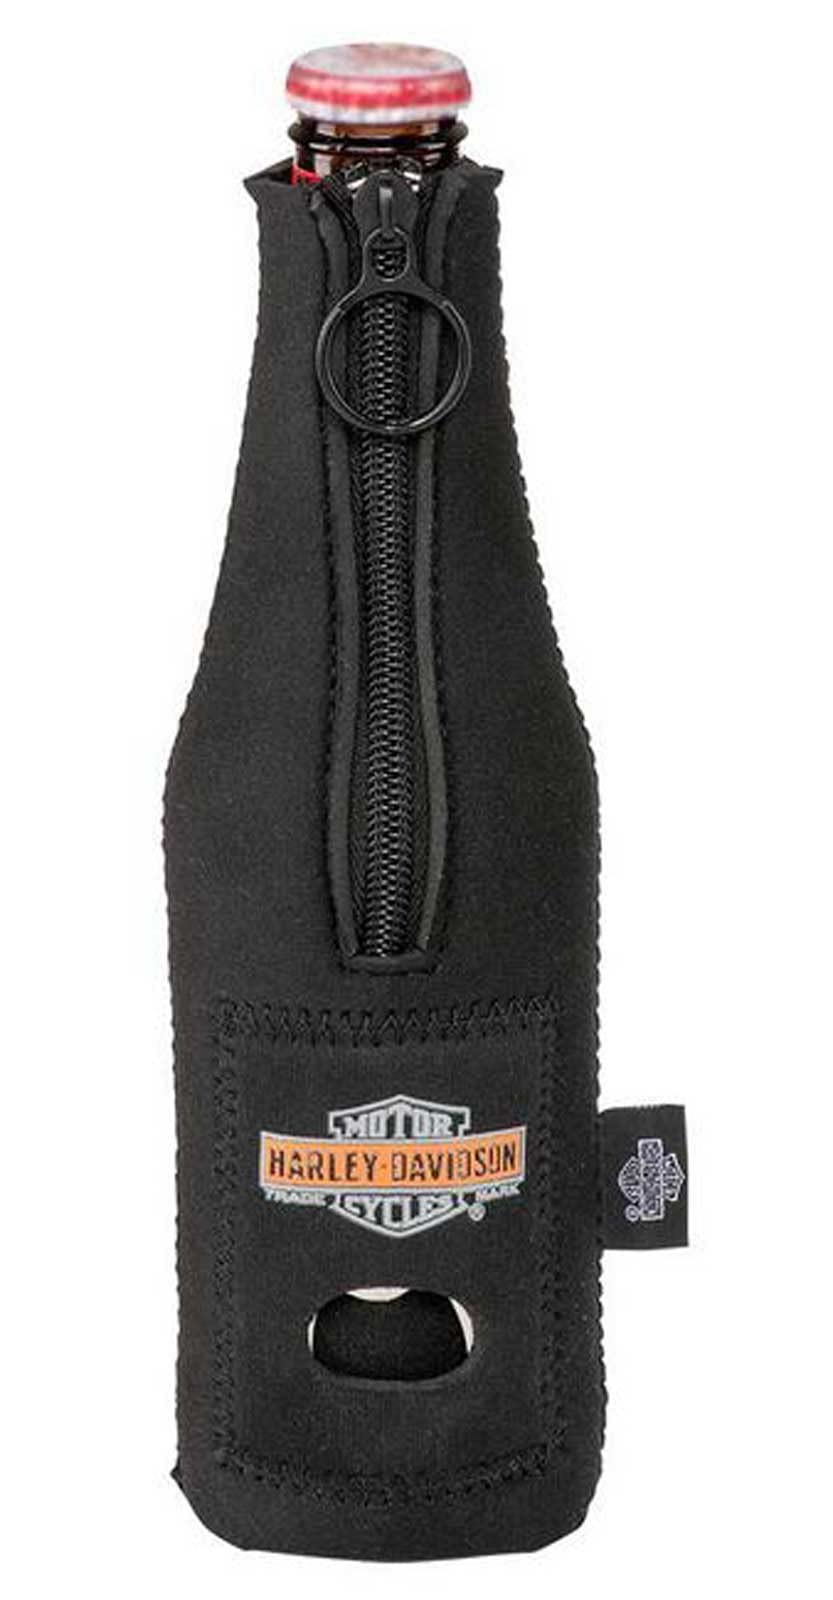 Harley-Davidson Pre-Luxe Neoprene Zippered Bottle Wrap w/Bottle Opener